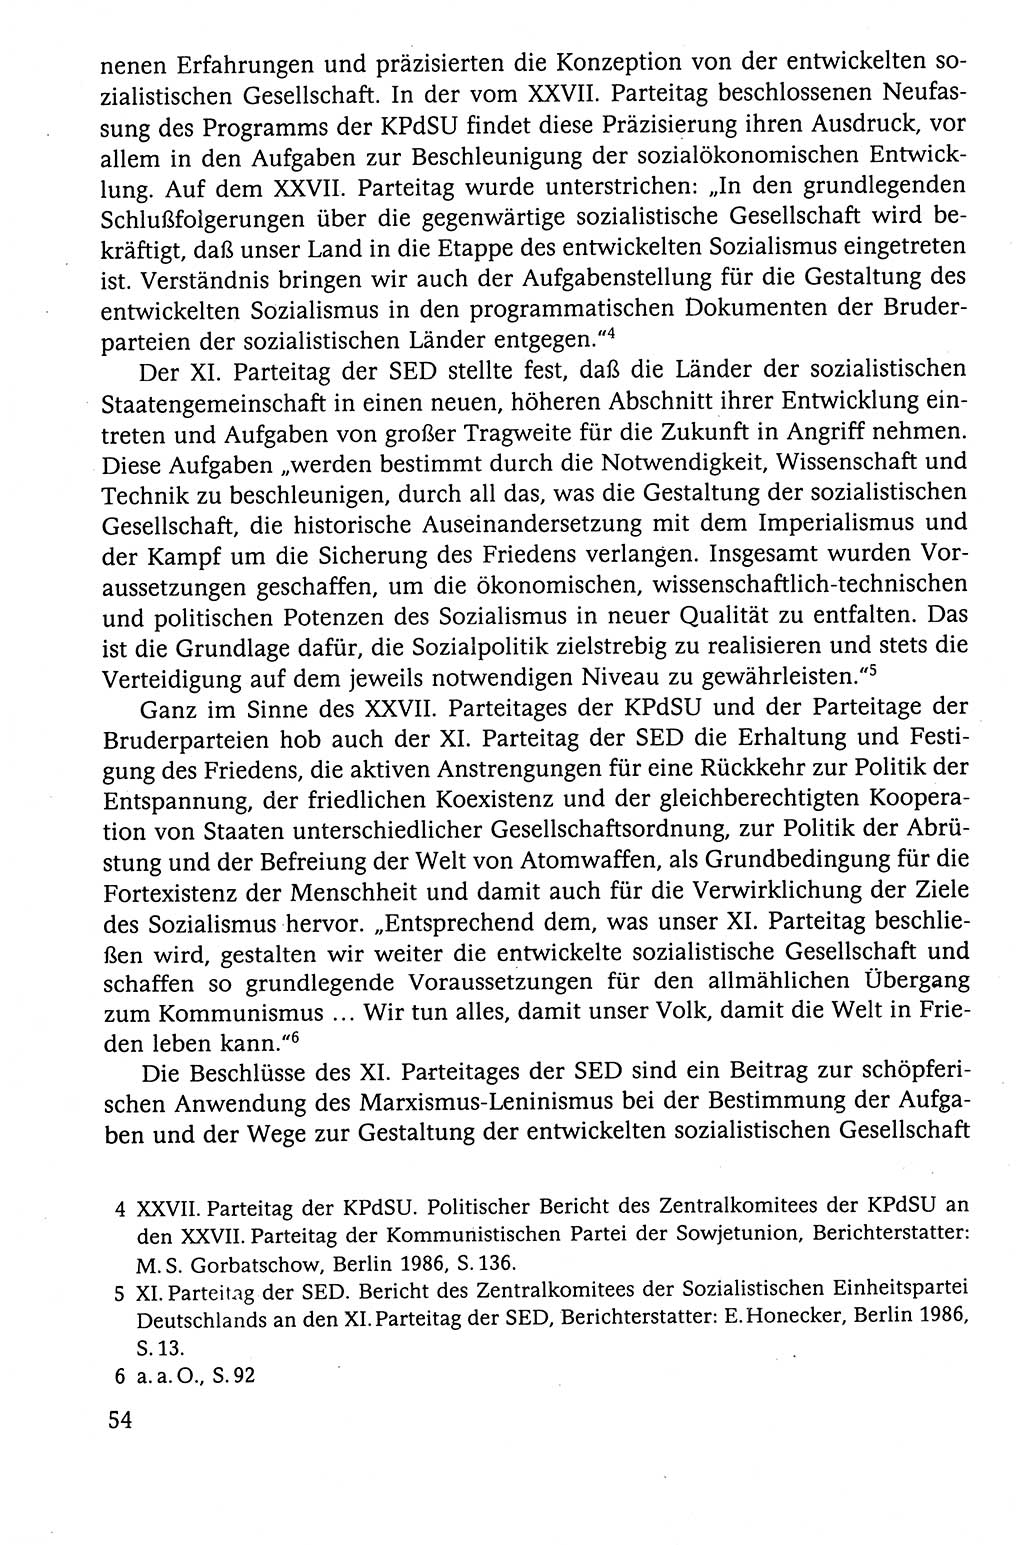 Der Staat im politischen System der DDR (Deutsche Demokratische Republik) 1986, Seite 54 (St. pol. Sys. DDR 1986, S. 54)